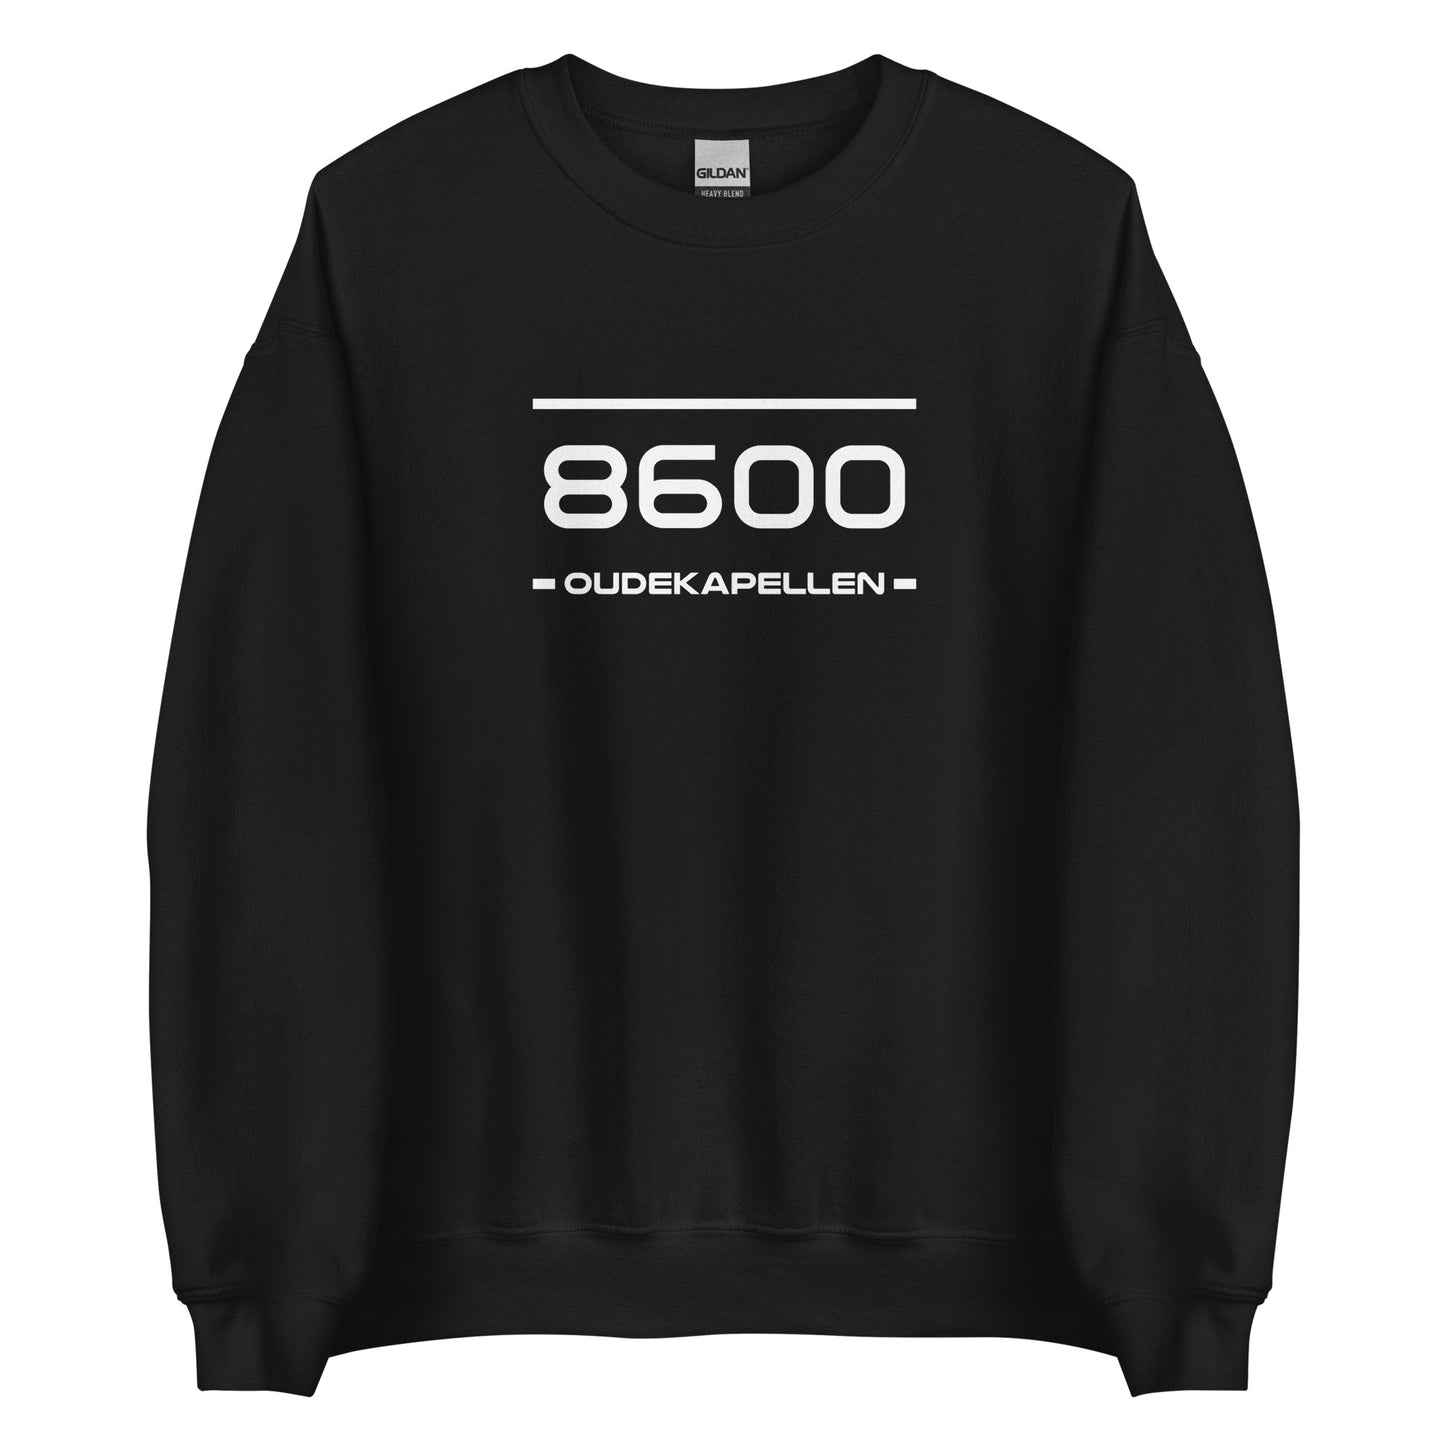 Sweater - 8600 - Oudekapellen (M/V)